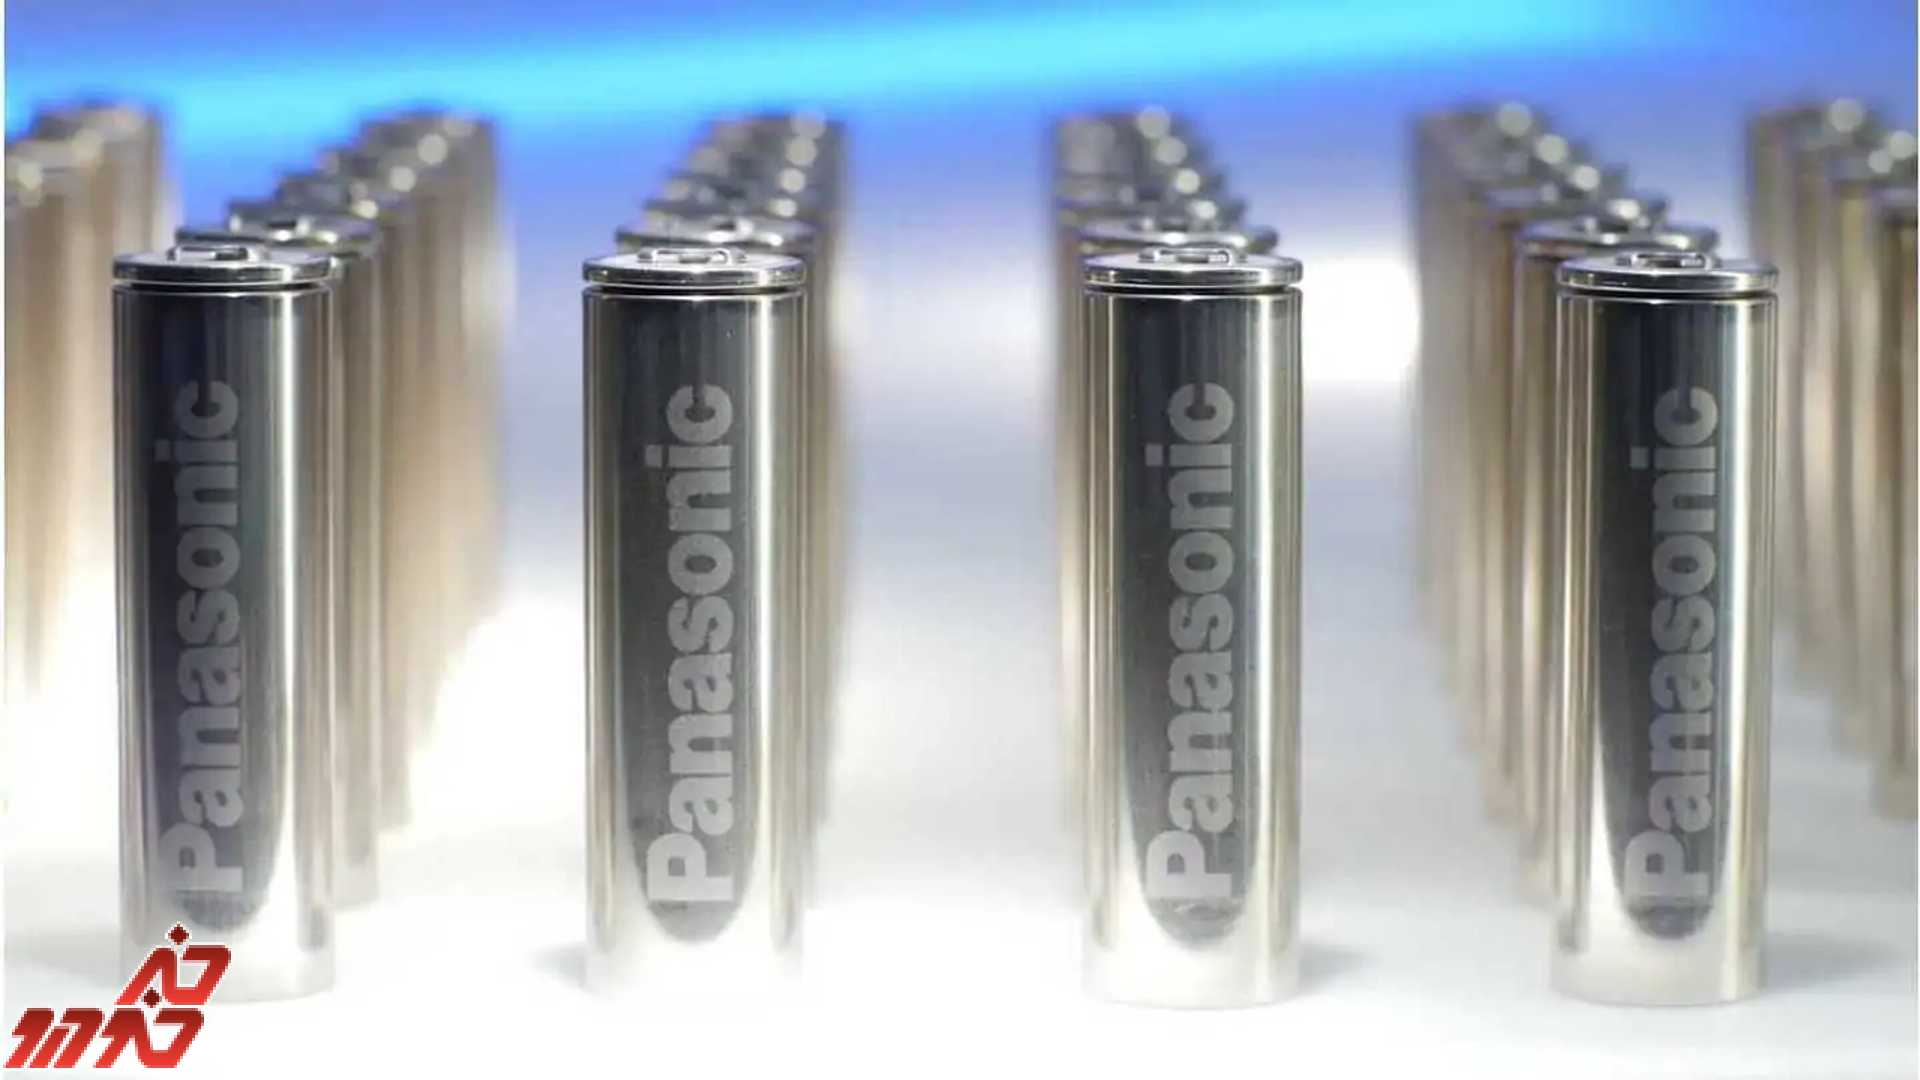 مزدا و پاناسونیک در نهایت برای تامین باتری خودروهای الکتریکی استوانه ای معامله کردند